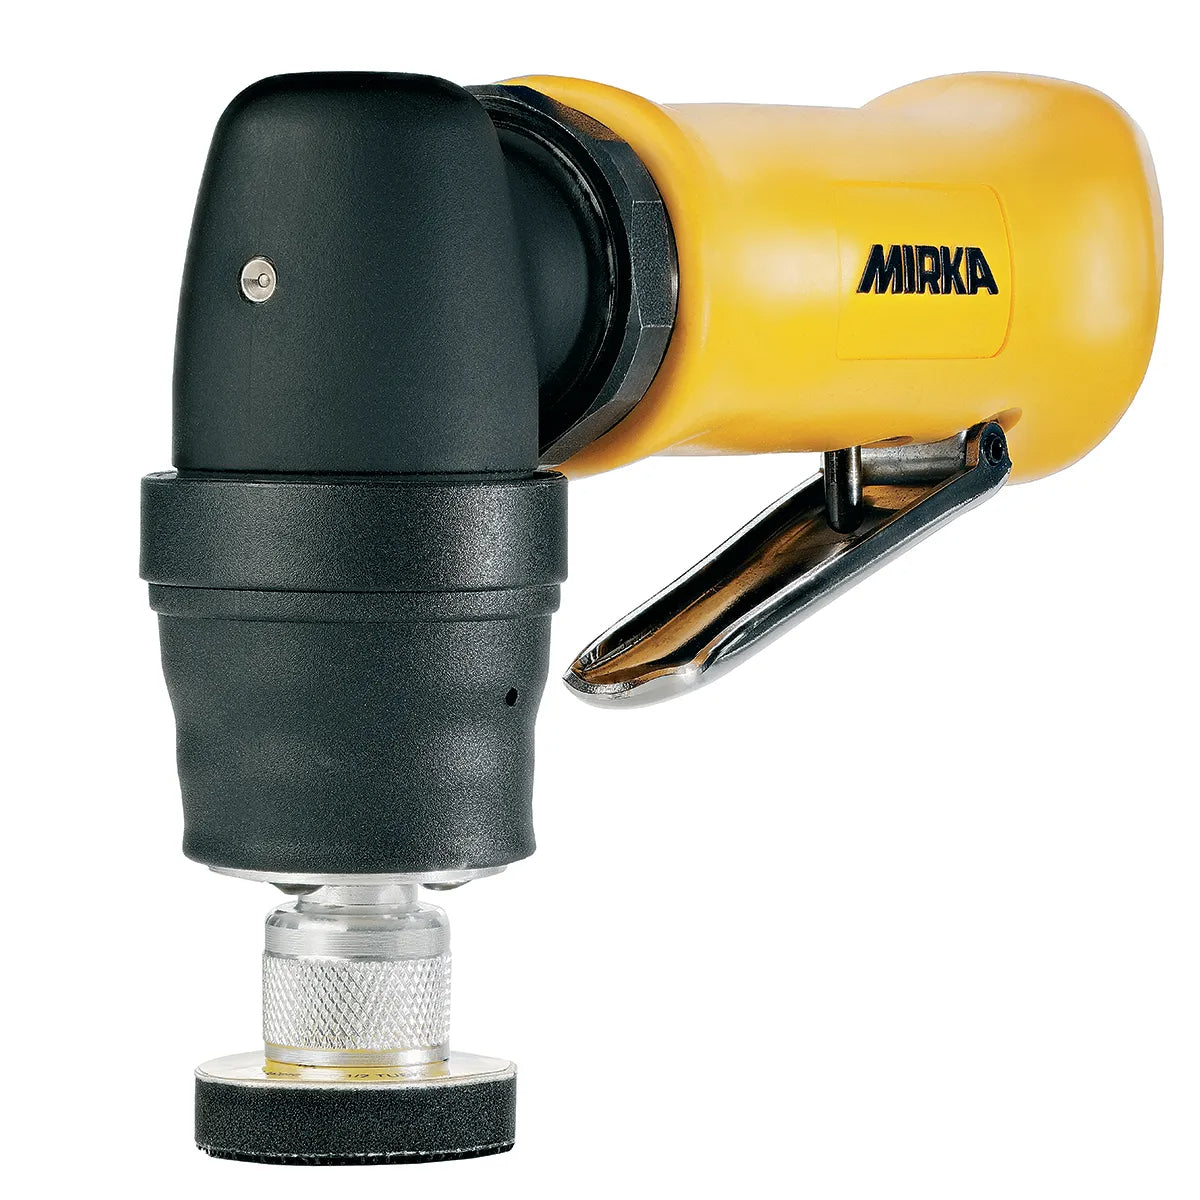 Mirka® AOS 130NV Ø 32mm Pneumatic Orbital Spot Repair Sander